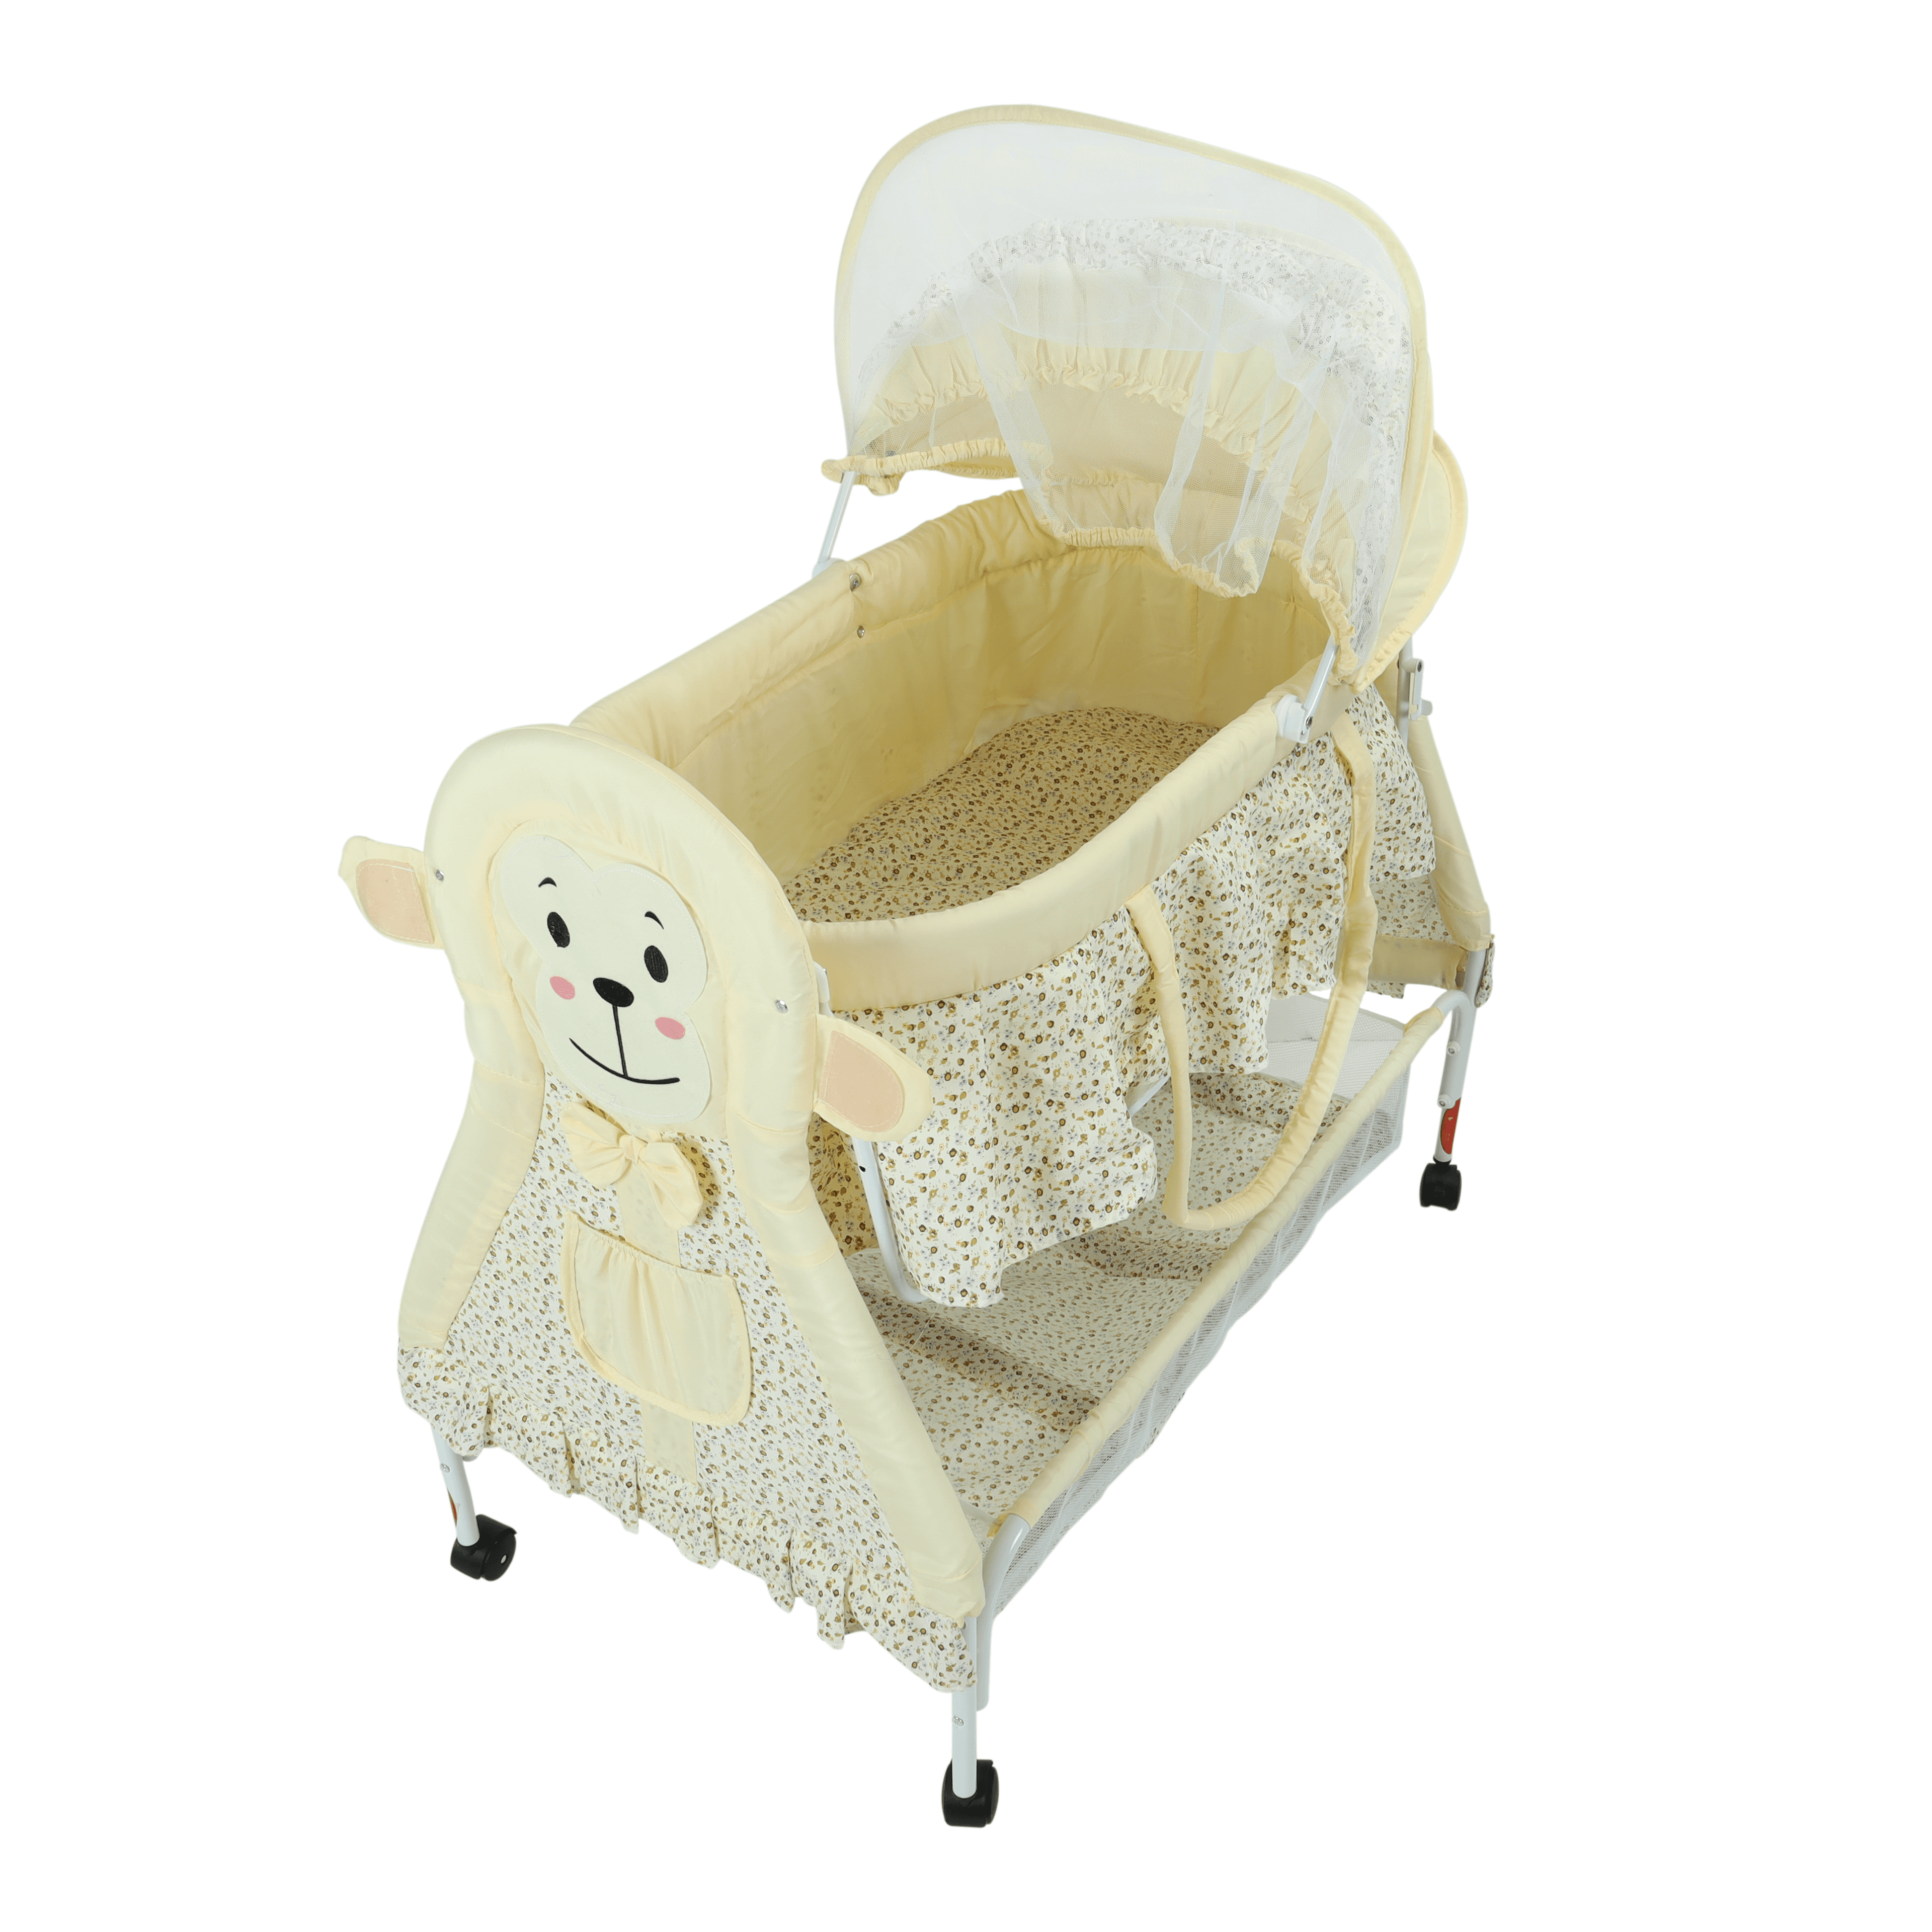 سرير للأطفال مع ناموسية سكري Baby Cradle With Swing Function And Mosquito Net - Baby Plus